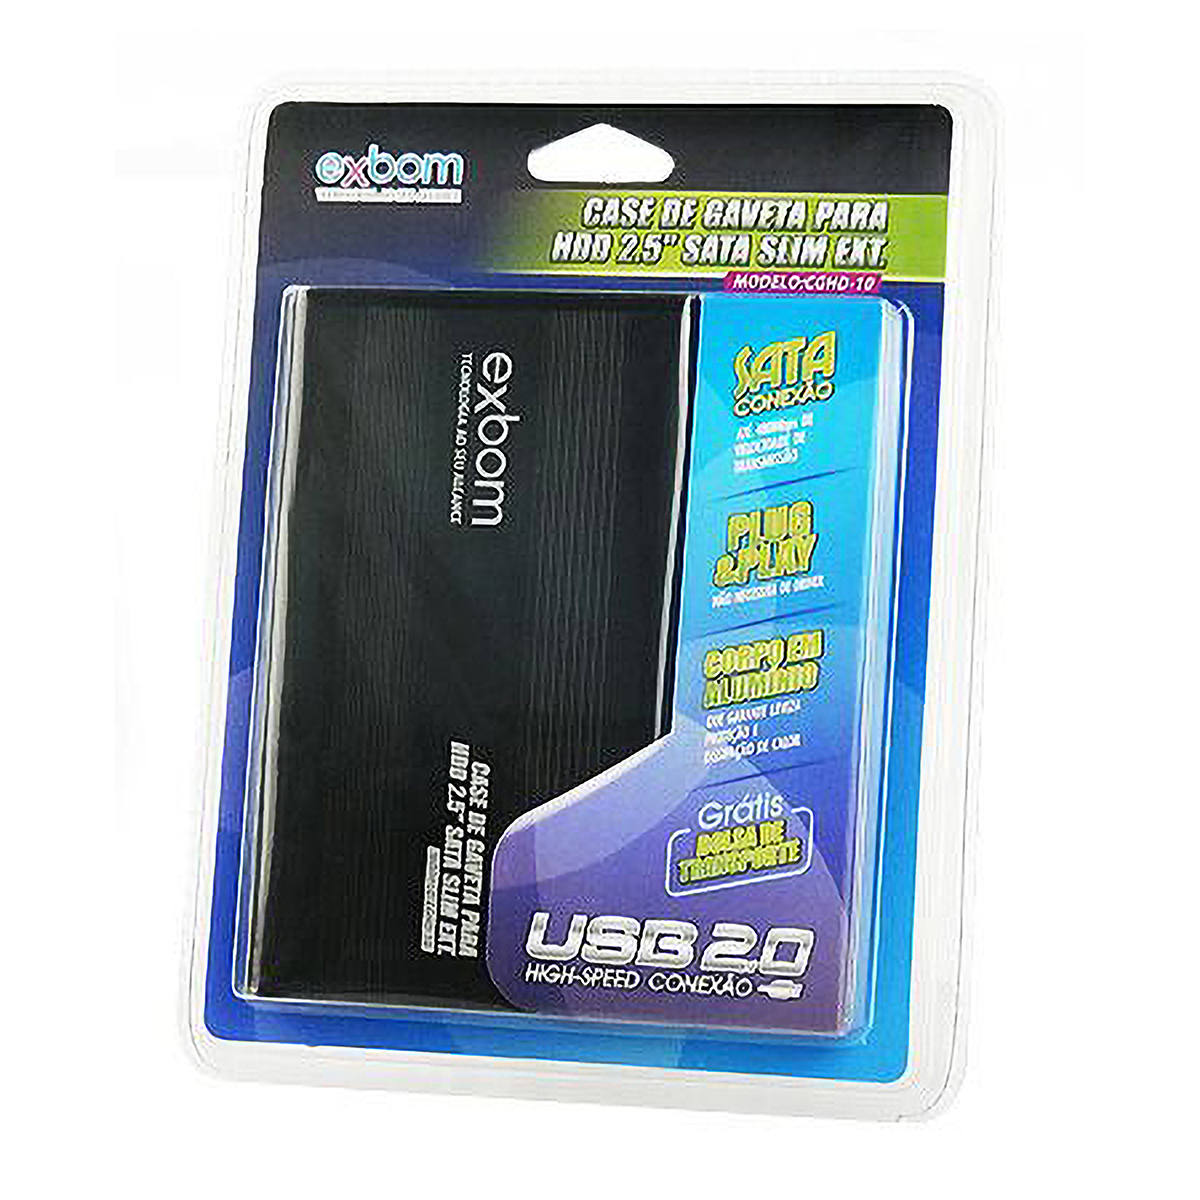 Case USB 2.0 para HD Sata 2.5" Externo em Alumínio com Capa de Transporte Exbom CGHD-10